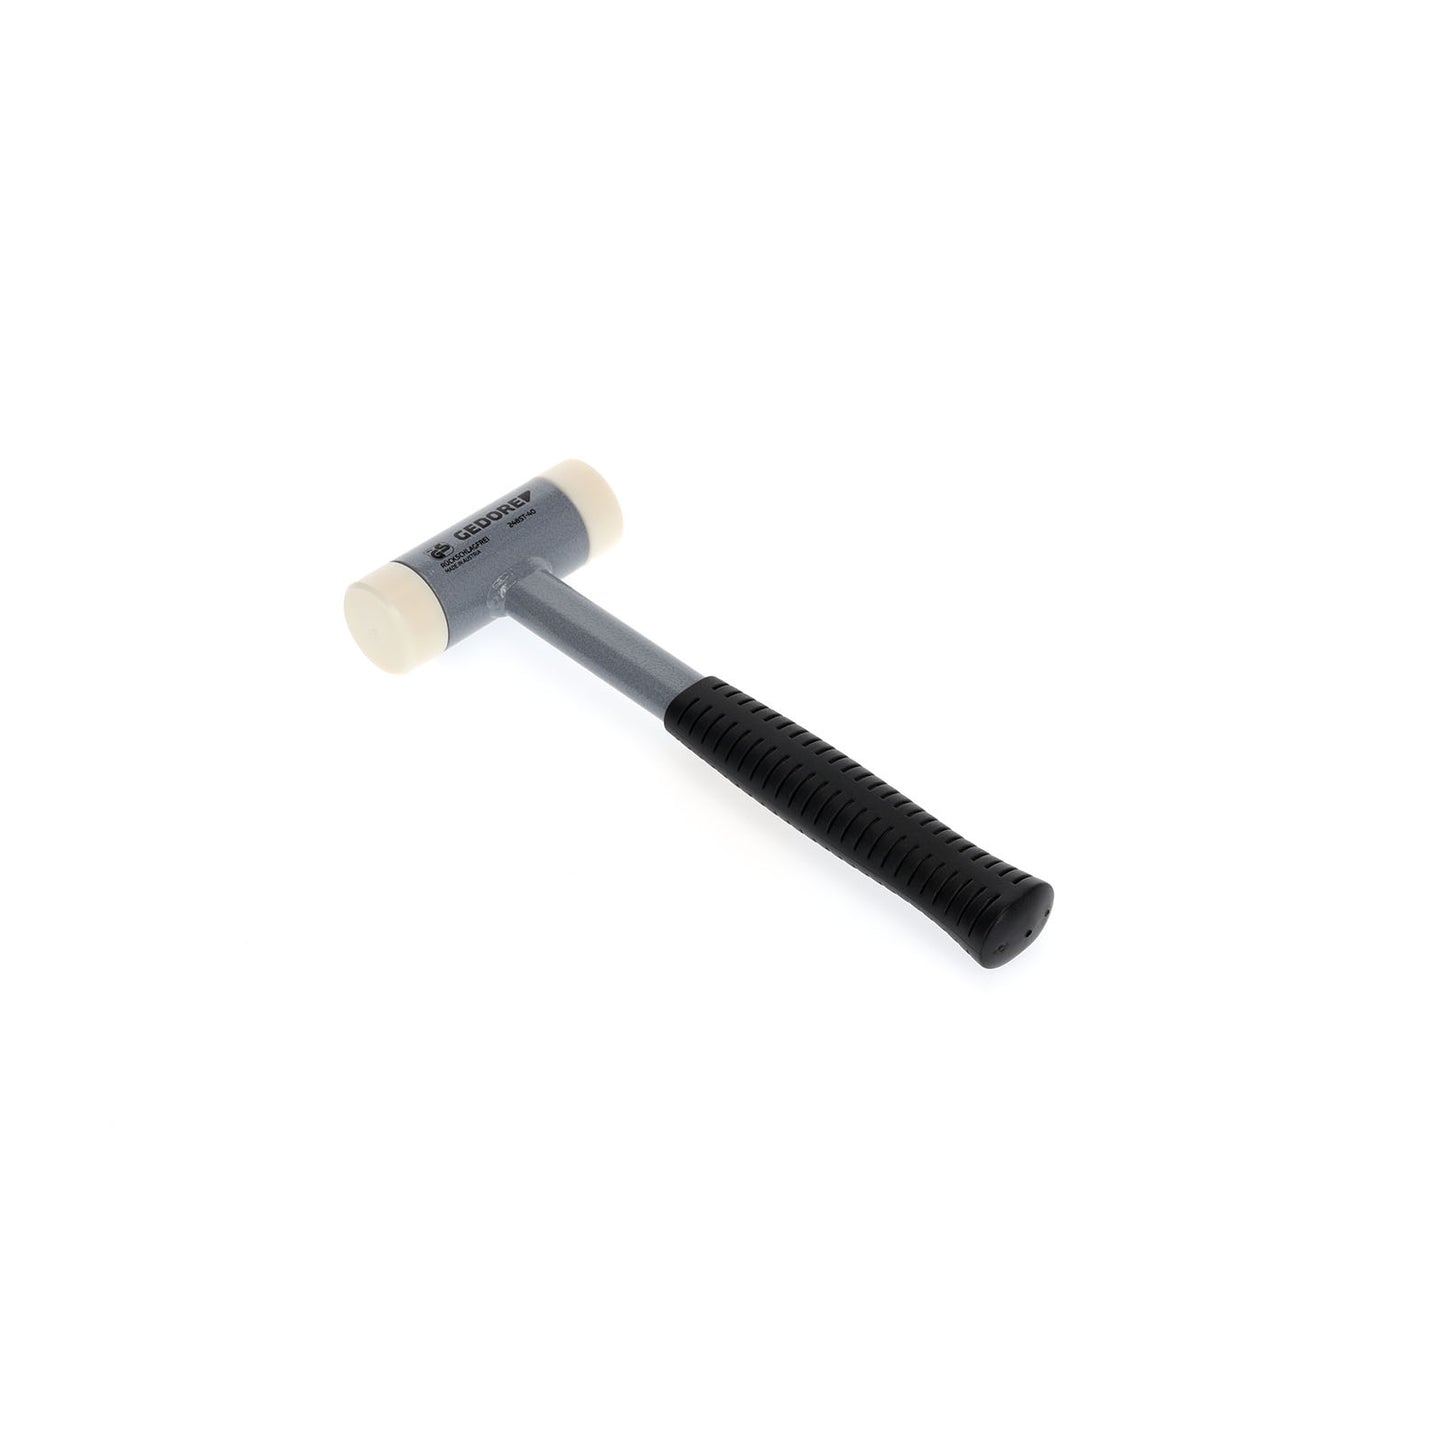 GEDORE 248 ST-40 - Anti-rebound hammer 40 mm (8829170)